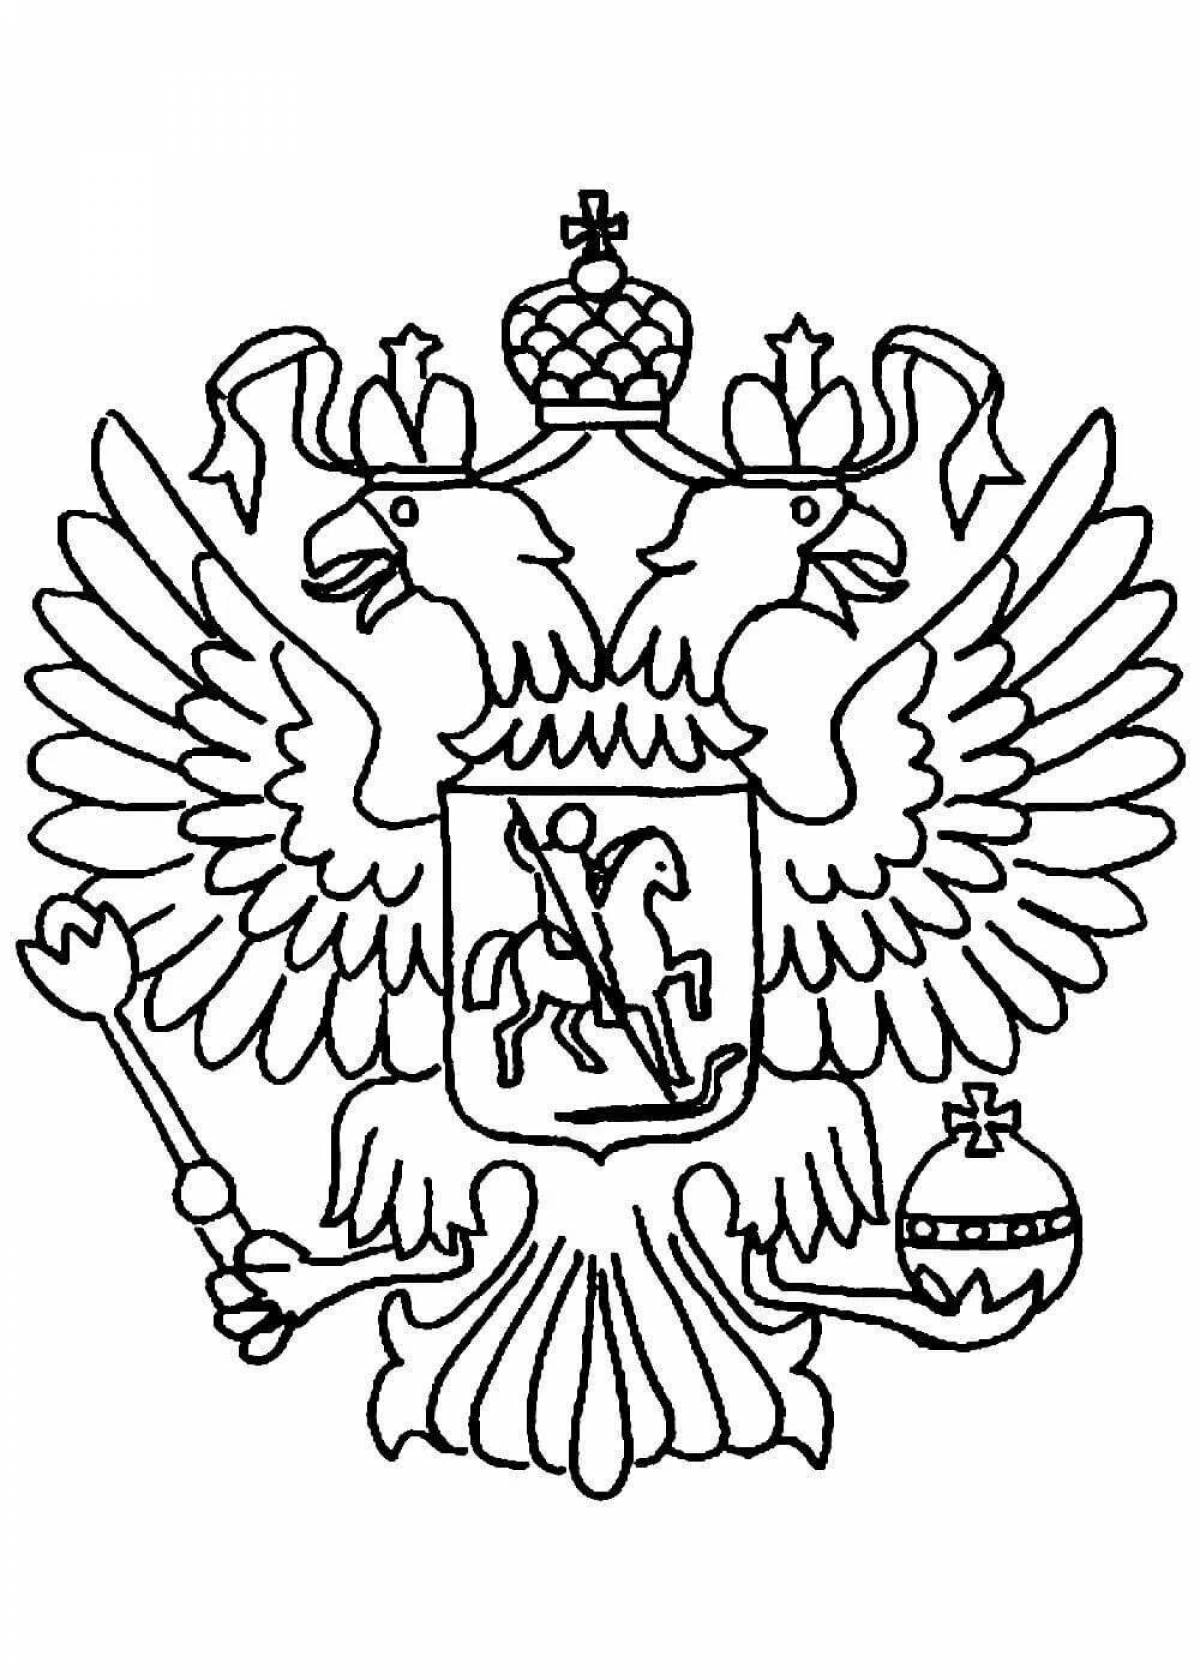 Занимательный герб россии для дошкольников